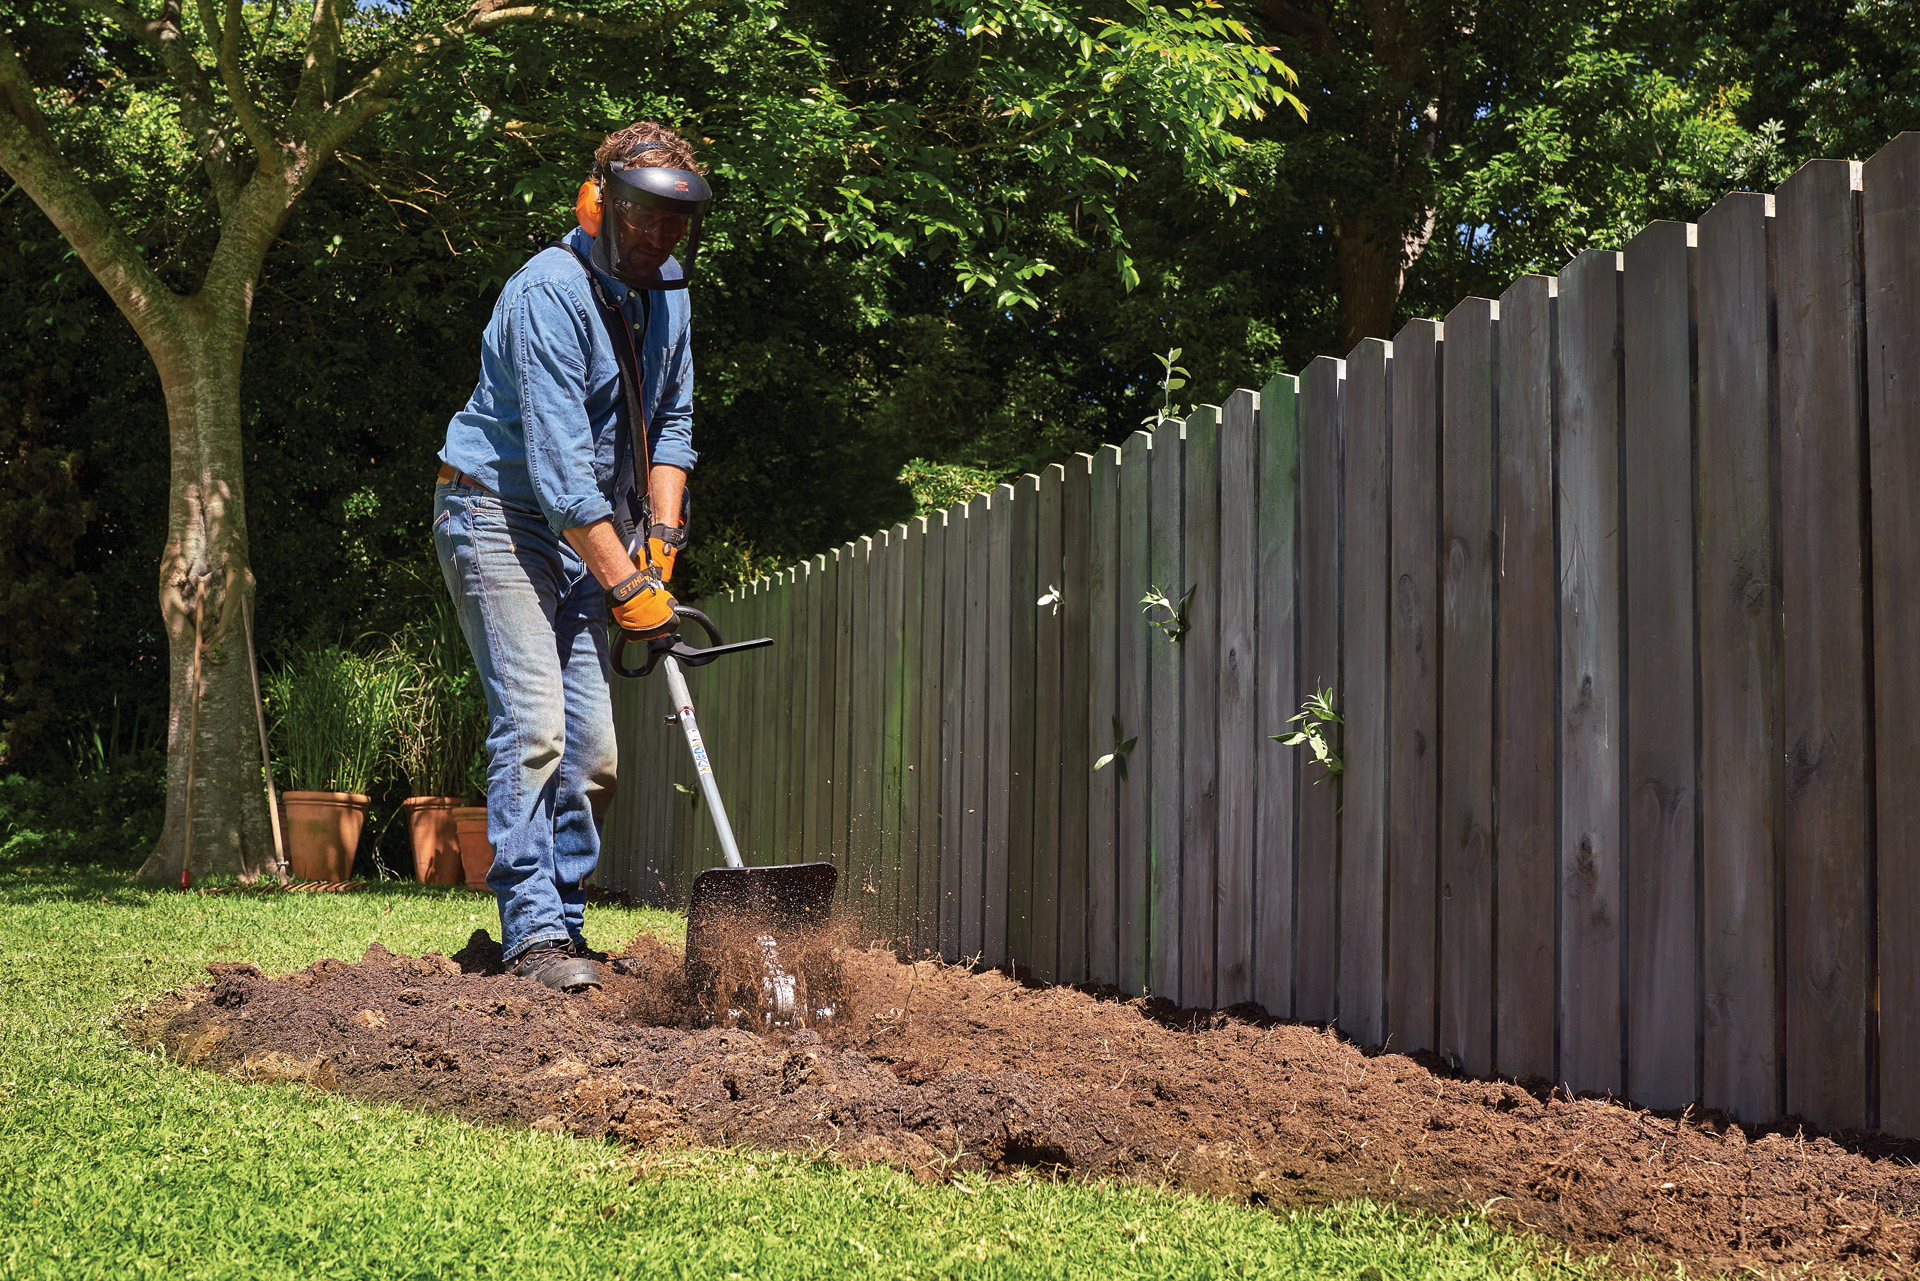 Una persona con equipo de protección cultiva la tierra en un jardín utilizando un STIHL KombiSystem con fresadora.